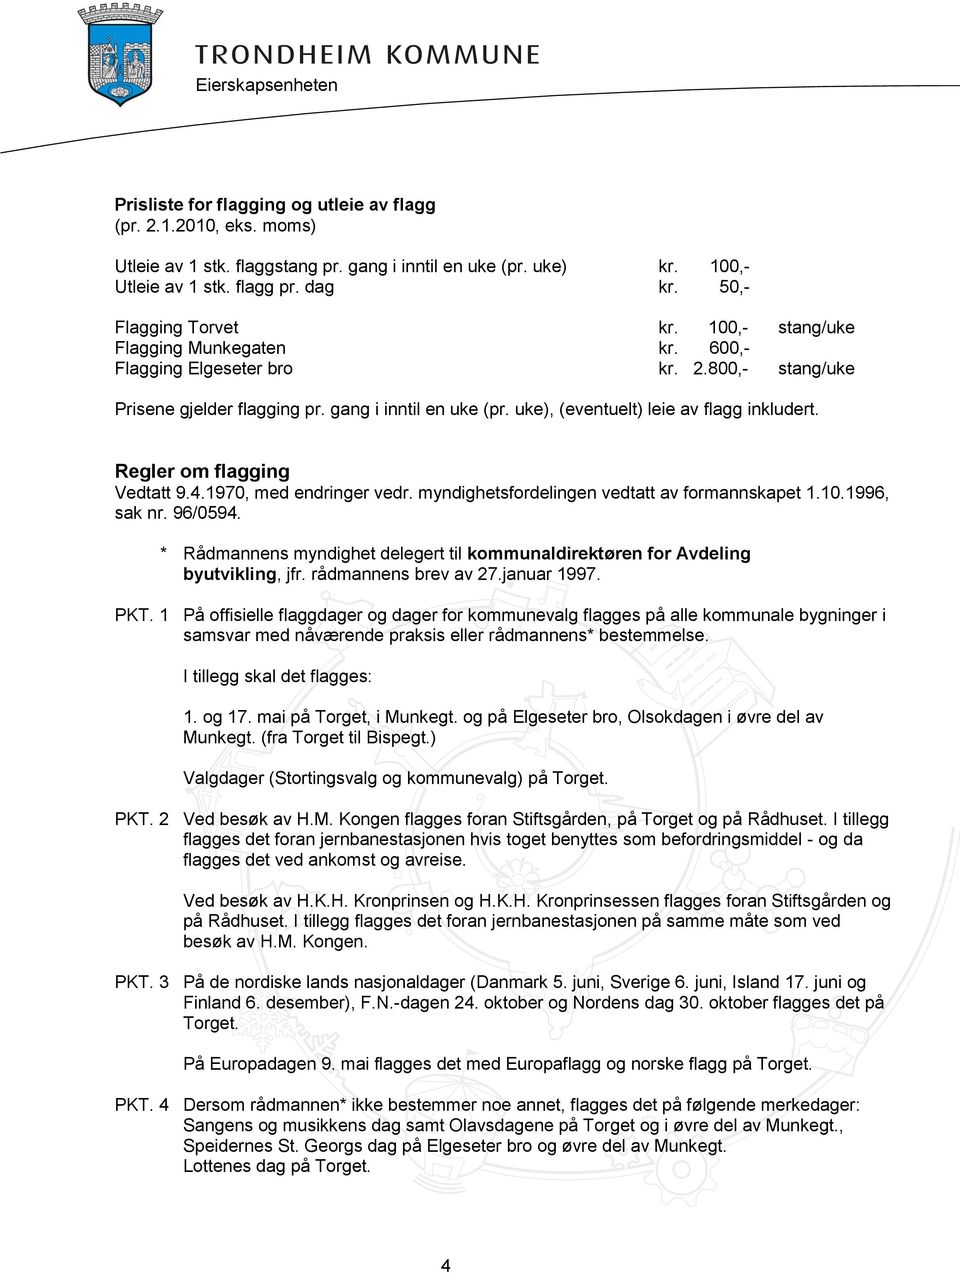 Regler om flagging Vedtatt 9.4.1970, med endringer vedr. myndighetsfordelingen vedtatt av formannskapet 1.10.1996, sak nr. 96/0594.